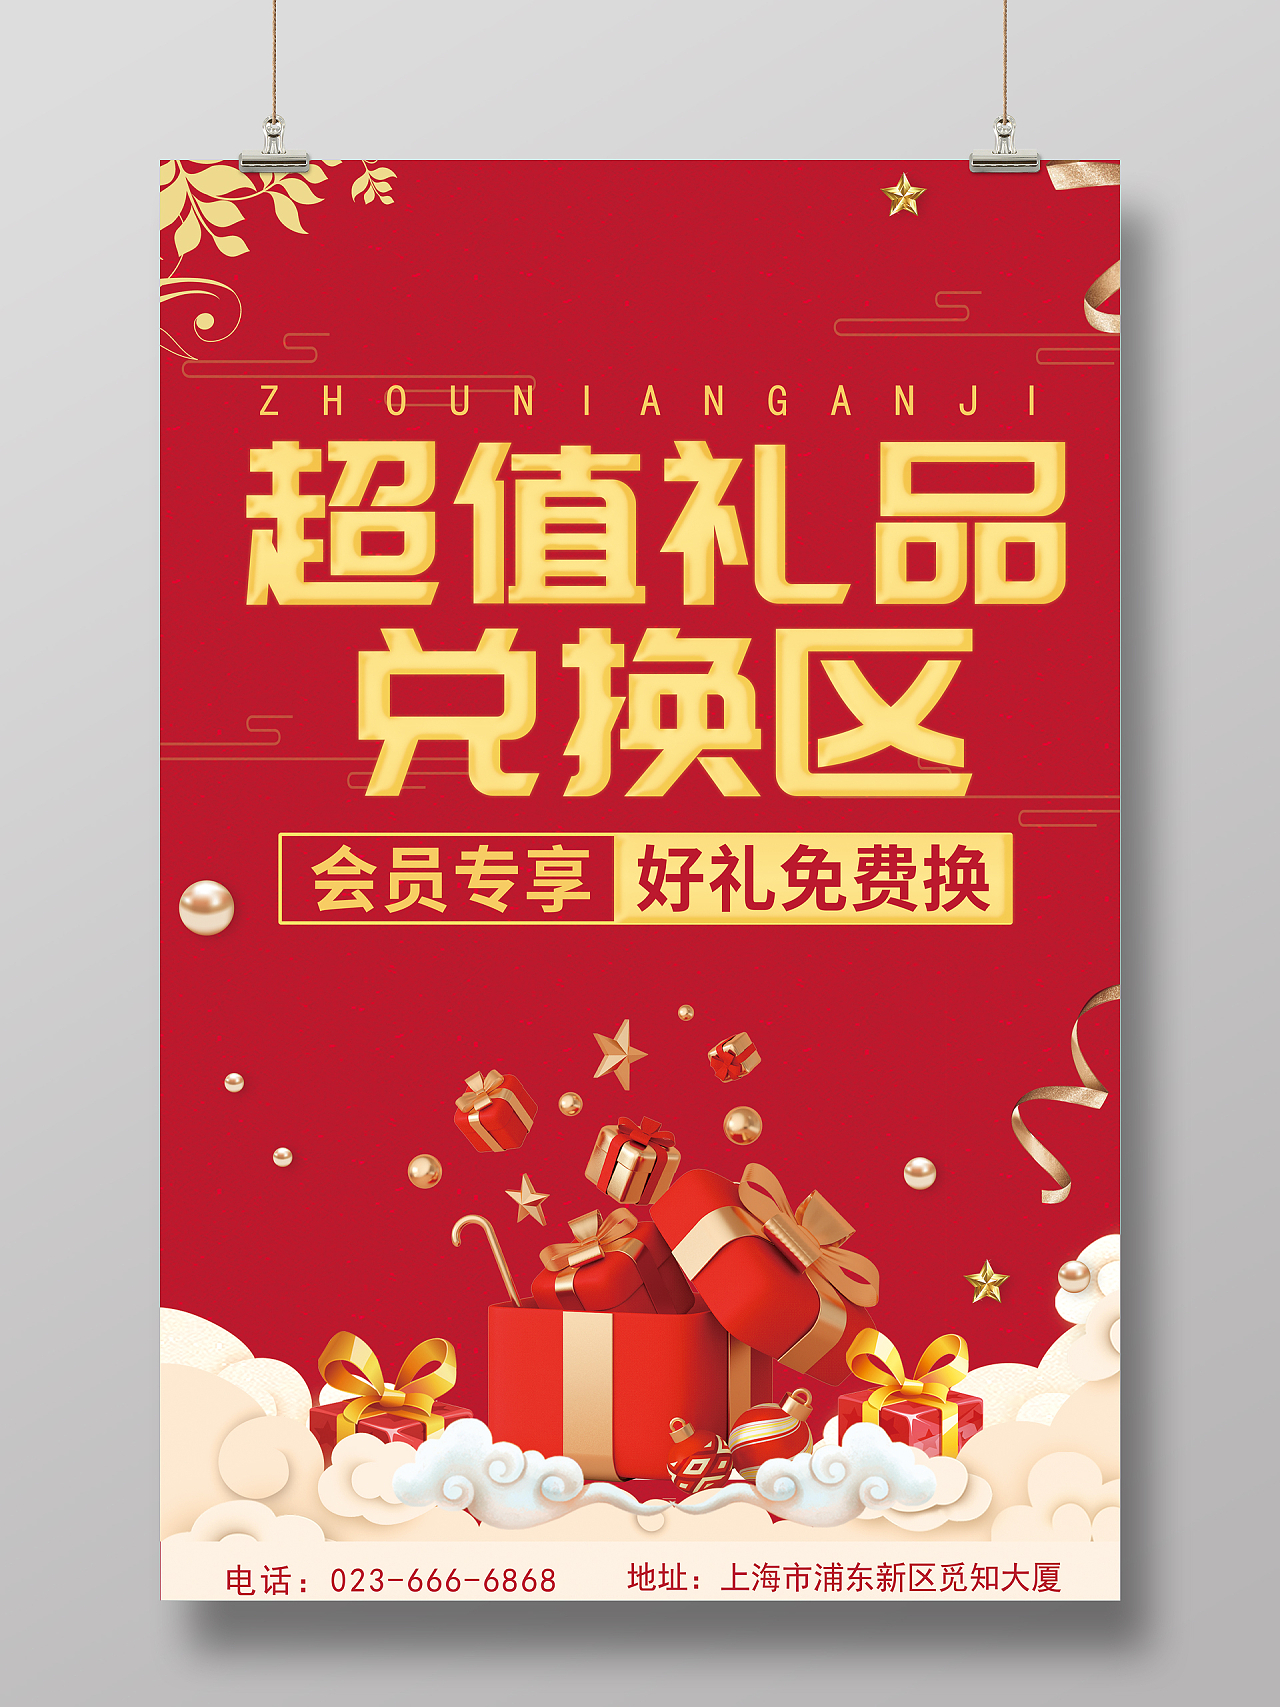 红色简约周年回馈活动礼品兑换礼品区海报